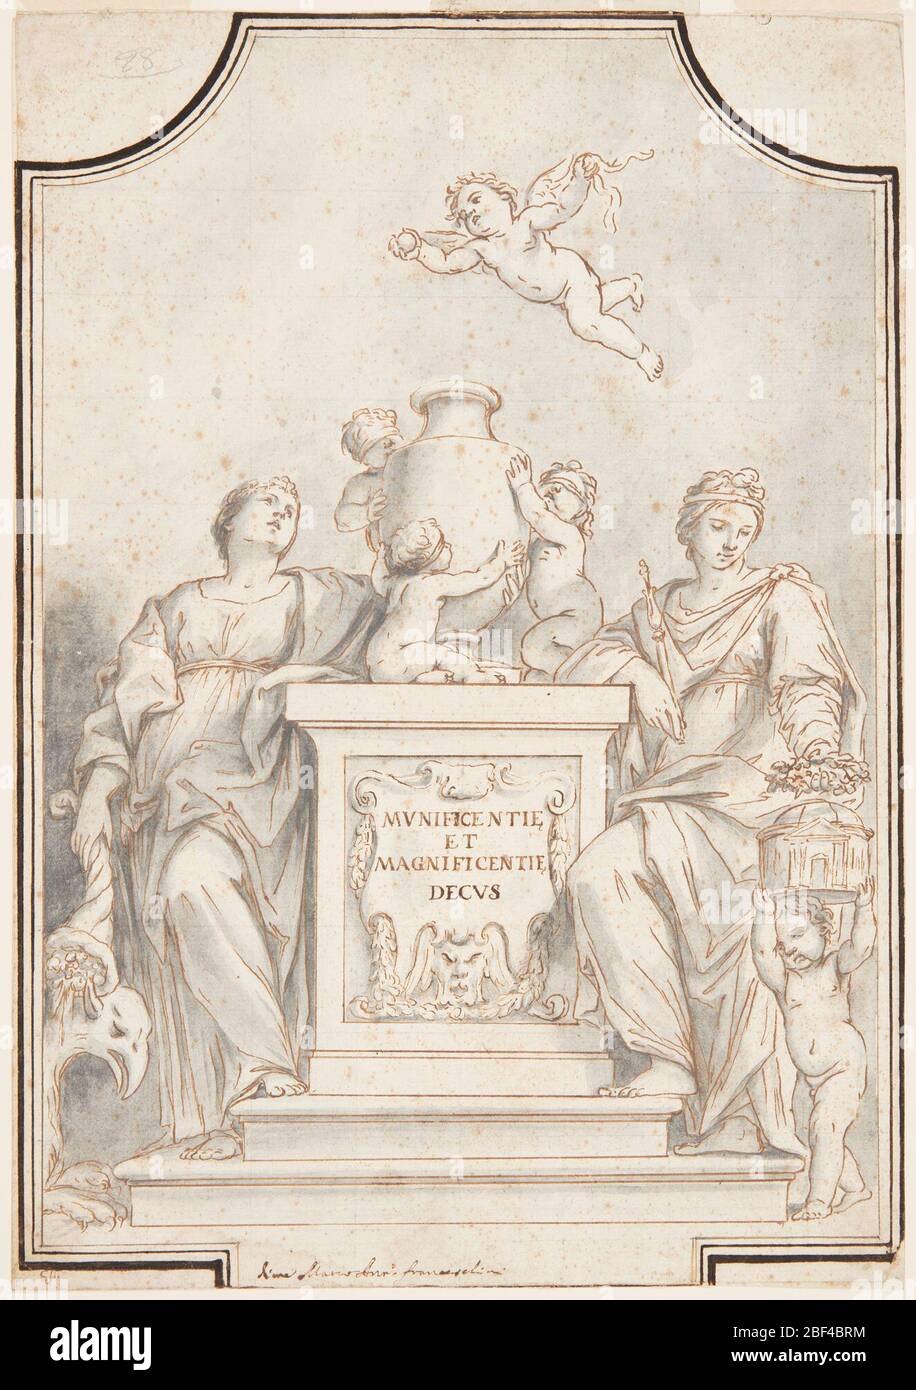 Design für eine monochrome Malerei Kirche von Corpus Domini Bologna Italien. Figurengruppe, die eine Urne auf einem Sockel umgibt. Drei Kinder mit verbundenen Augen umgeben die Vase, die sich jeweils an sie klammert. Ein fliegender Putto, der seine Augen aufgedeckt hat, hält einen Ball darüber. Stockfoto